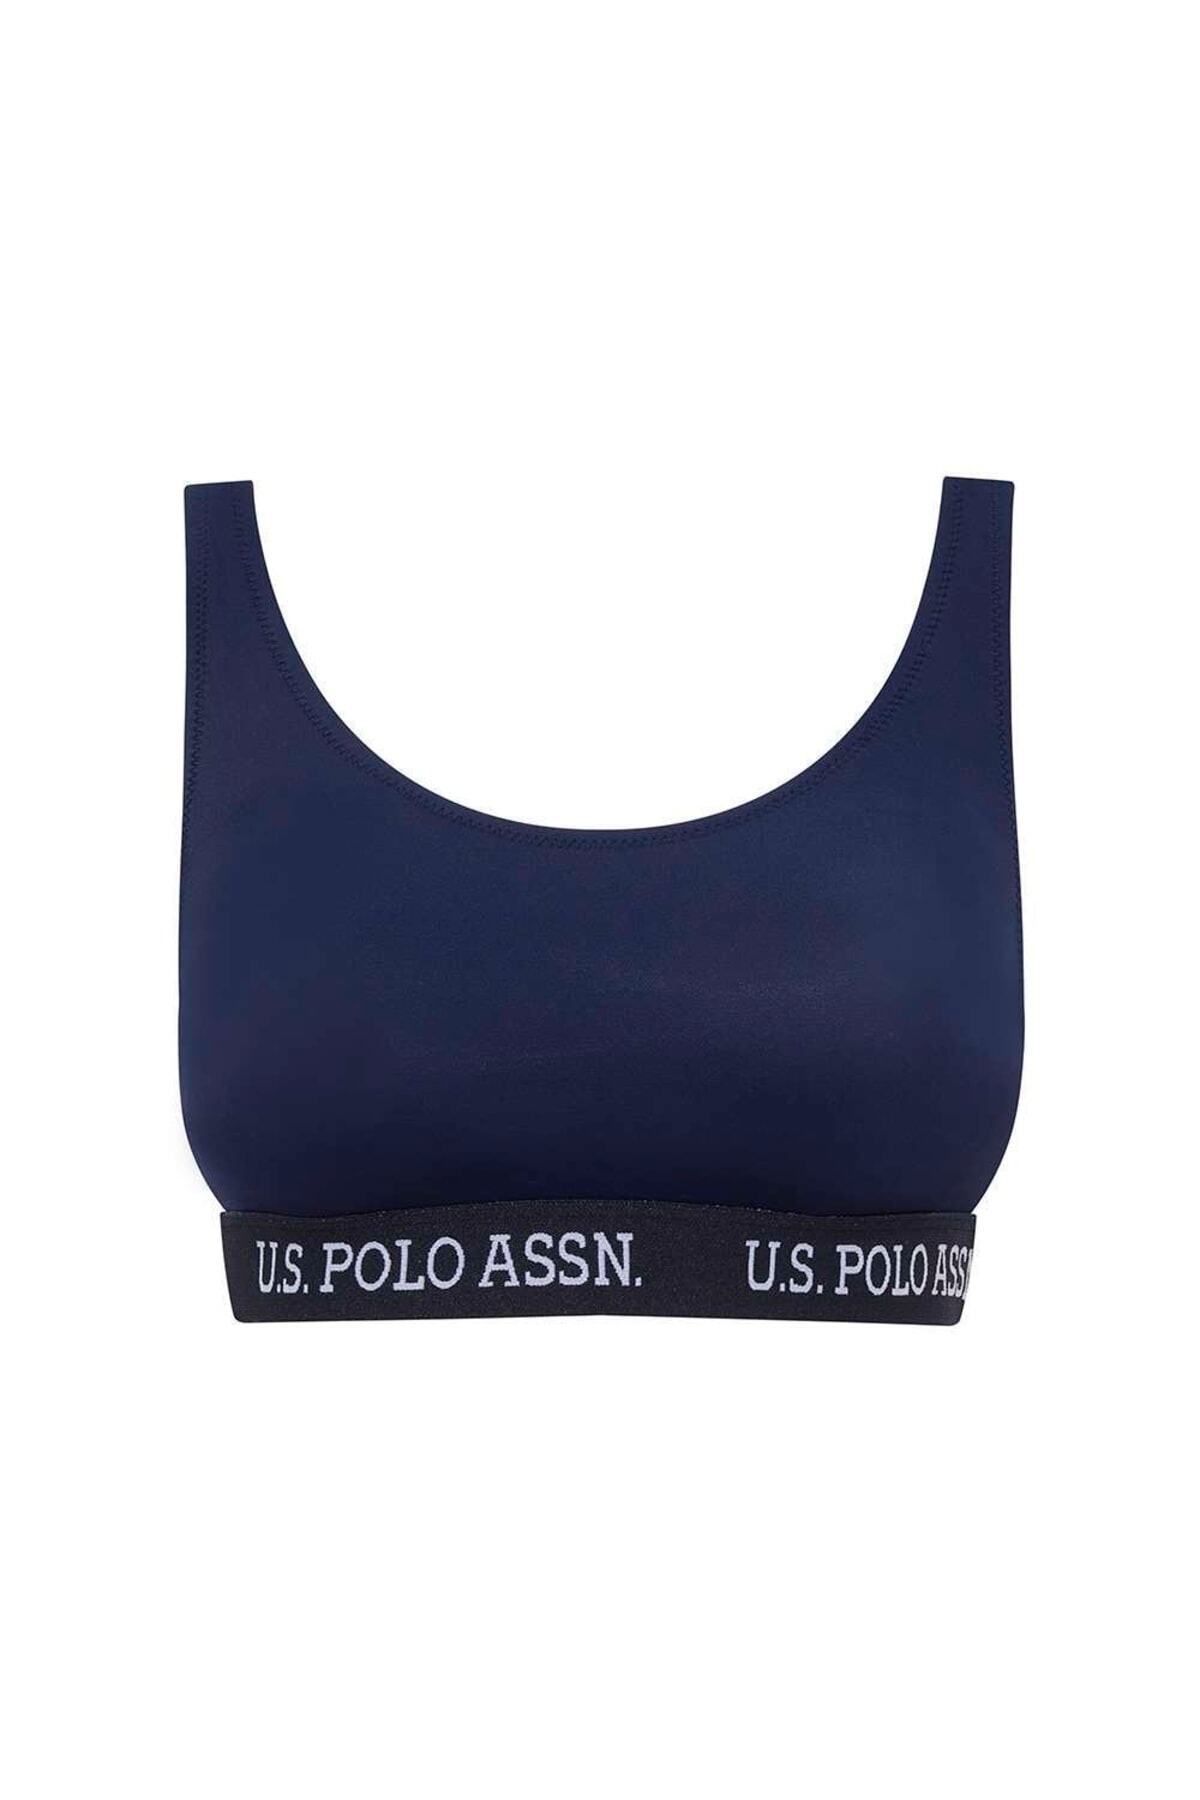 U.S. Polo Assn. Kadın Lacivert U Yaka Bralet Bikini Üst